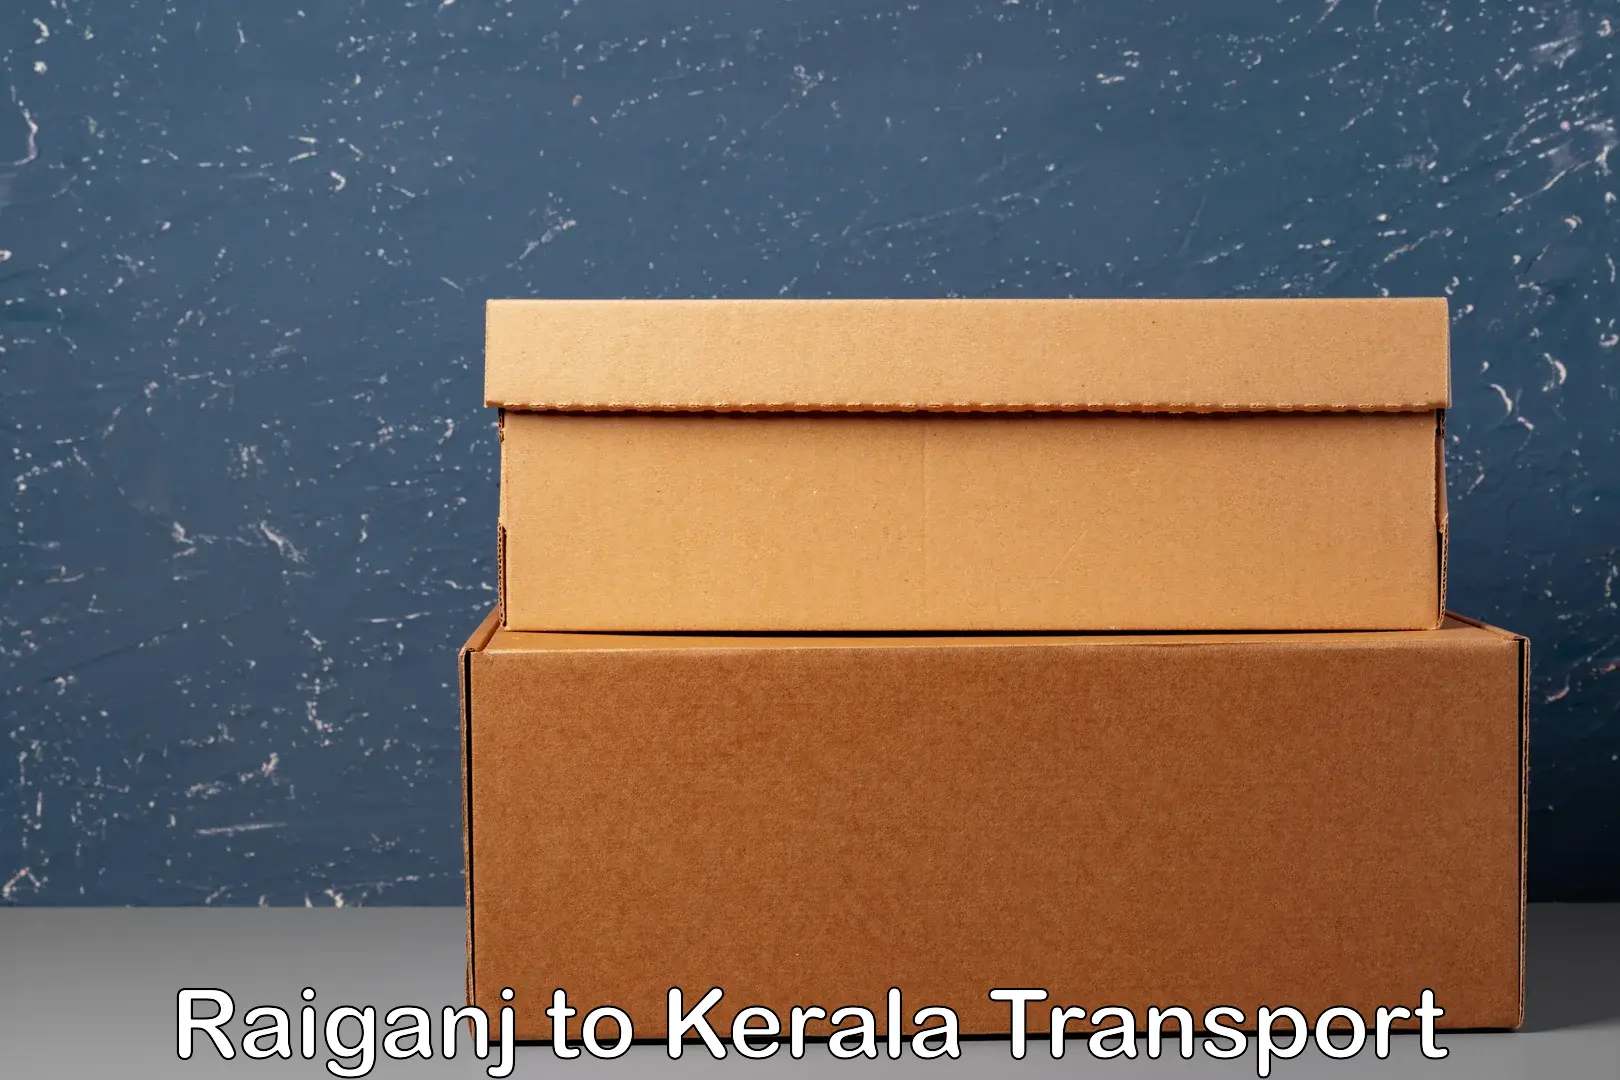 Nearest transport service Raiganj to IIIT Kottayam